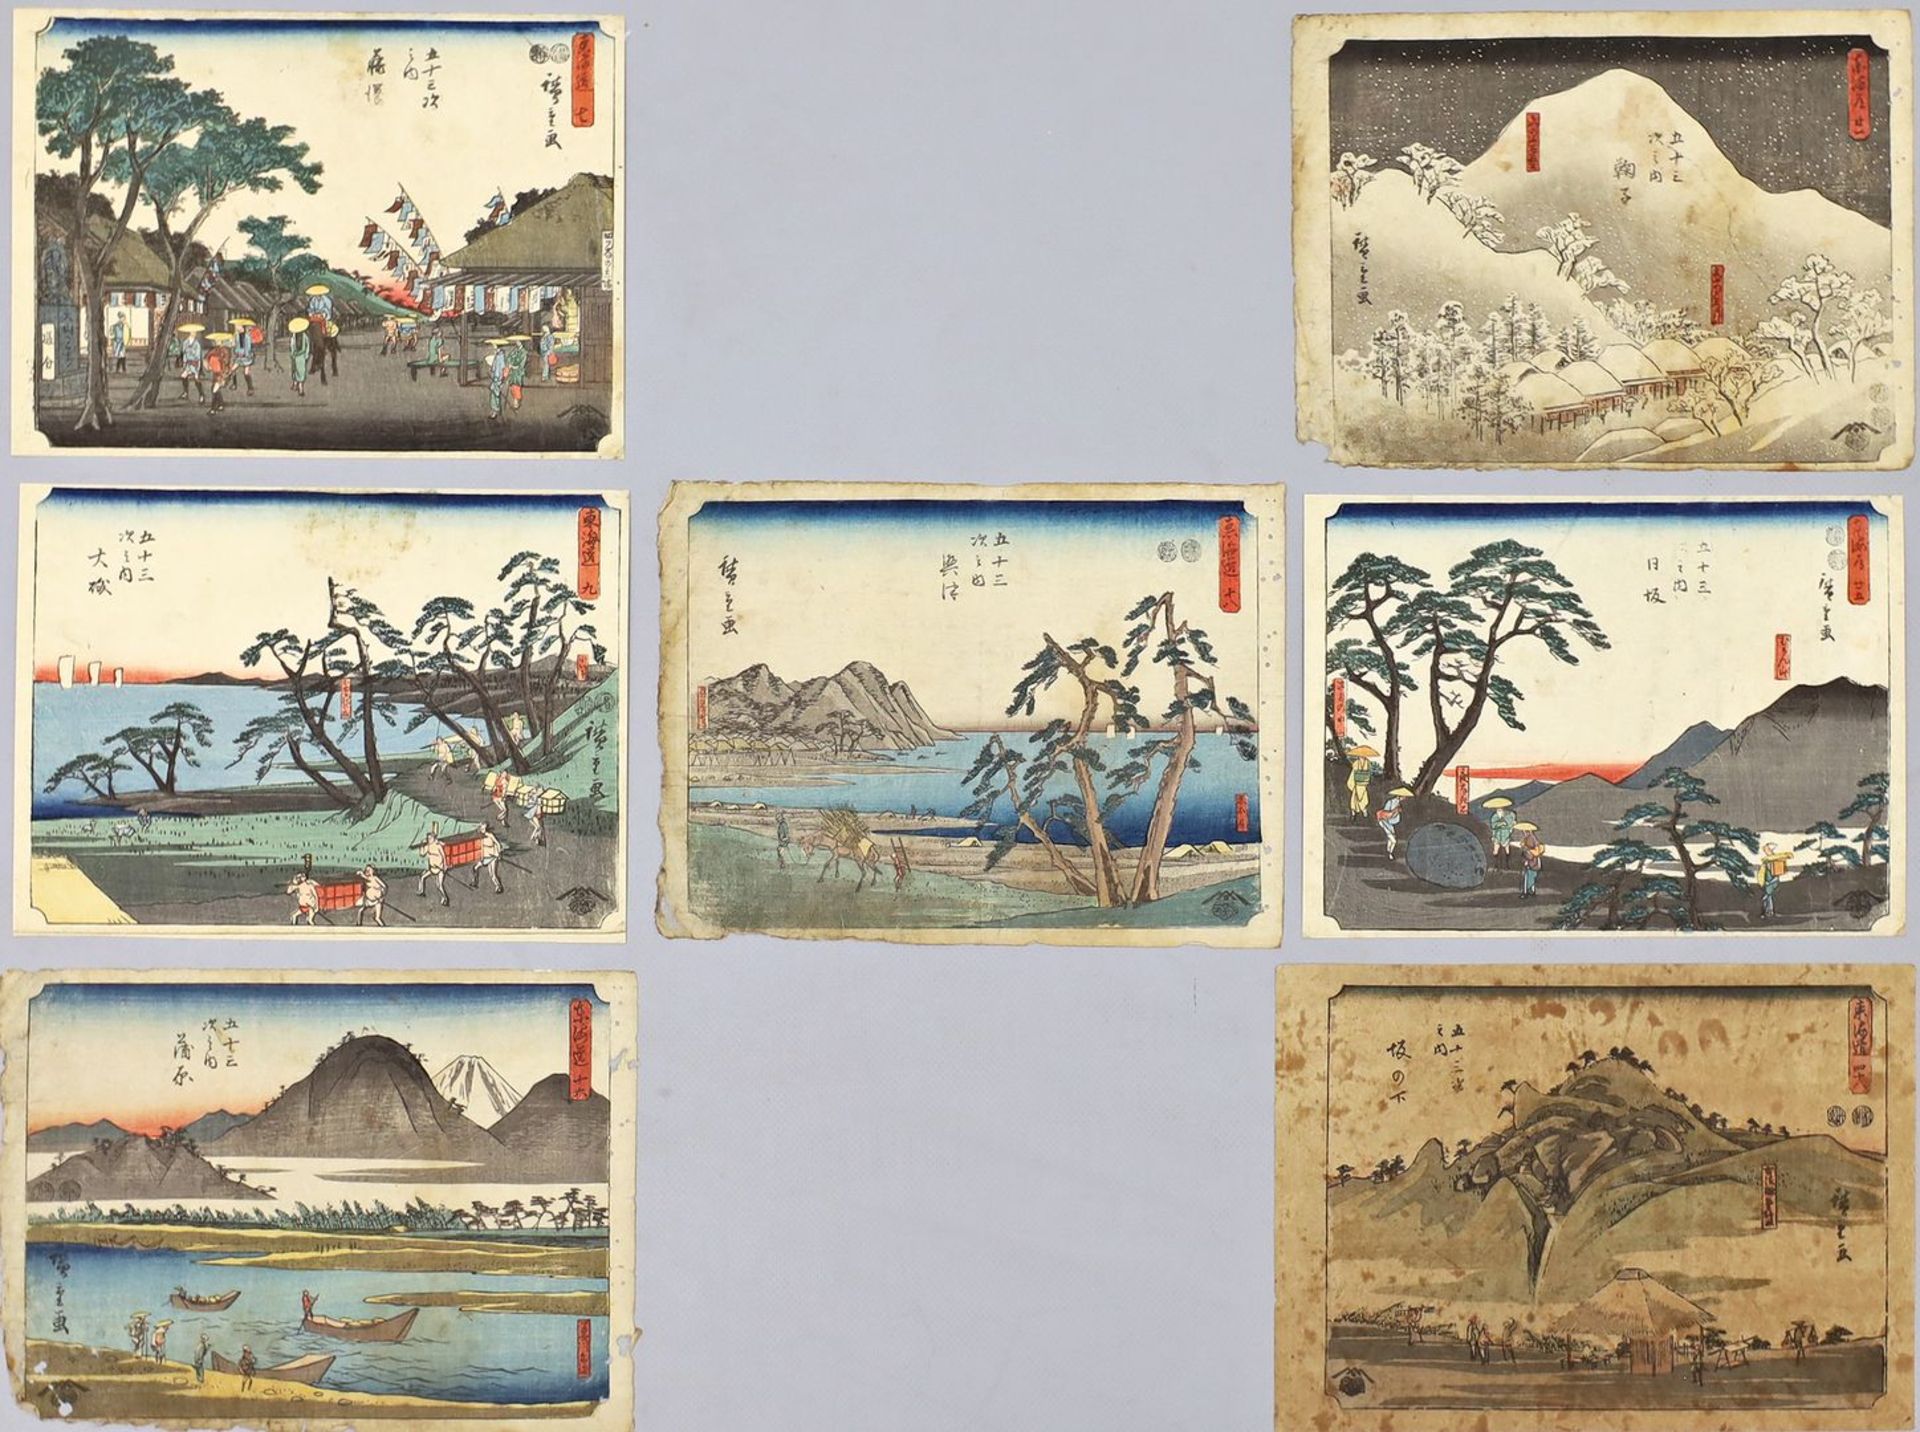 Hiroshige, Utagawa (1797 - 1858)